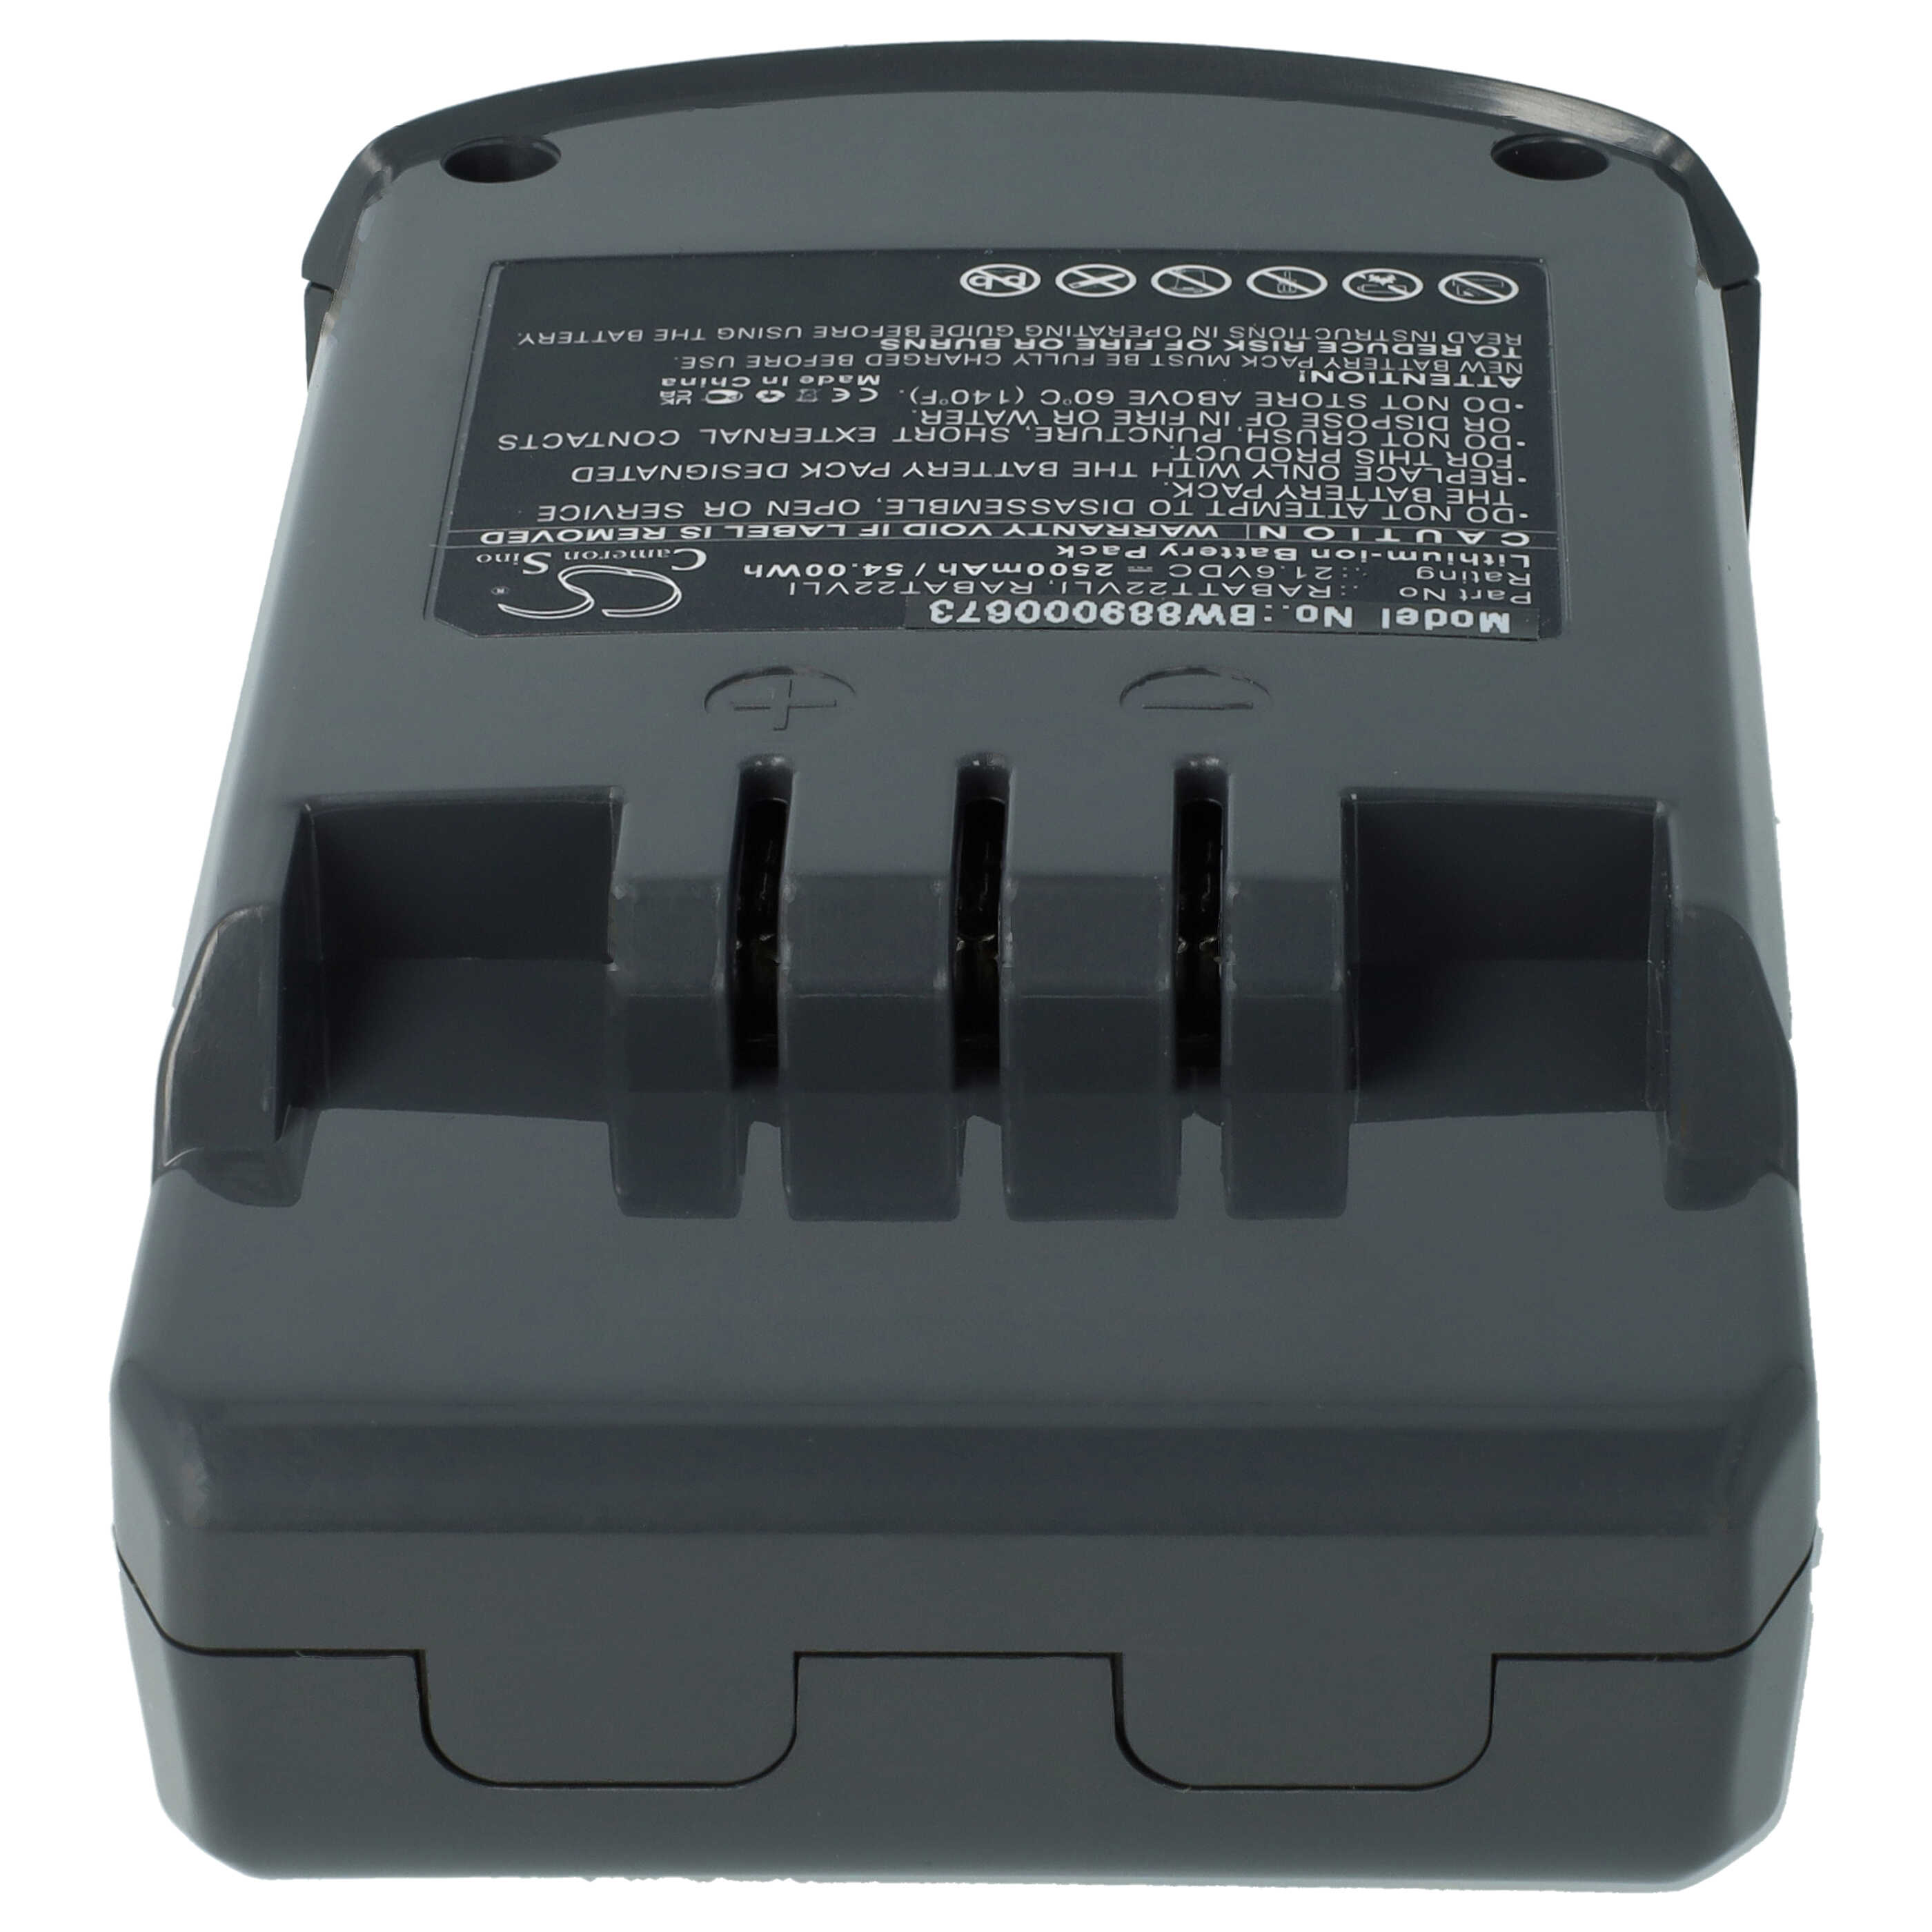 Batería reemplaza Hoover RABAT22VLI, 6.20.40.01-0, 48023809 para aspiradora Hoover - 2500 mAh 21,6 V Li-Ion